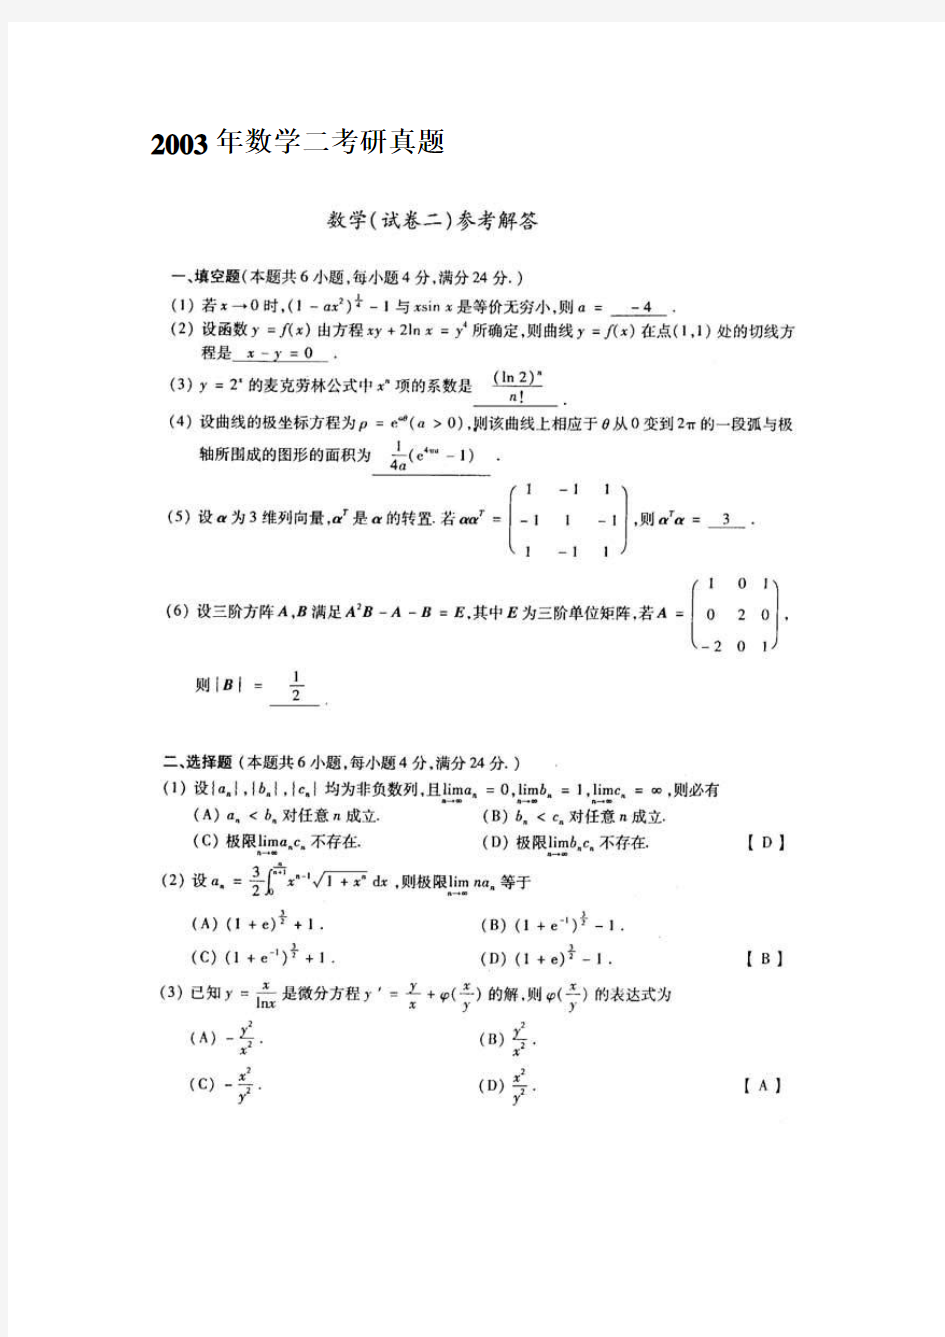 2003考研数学二真题及其答案(word版)